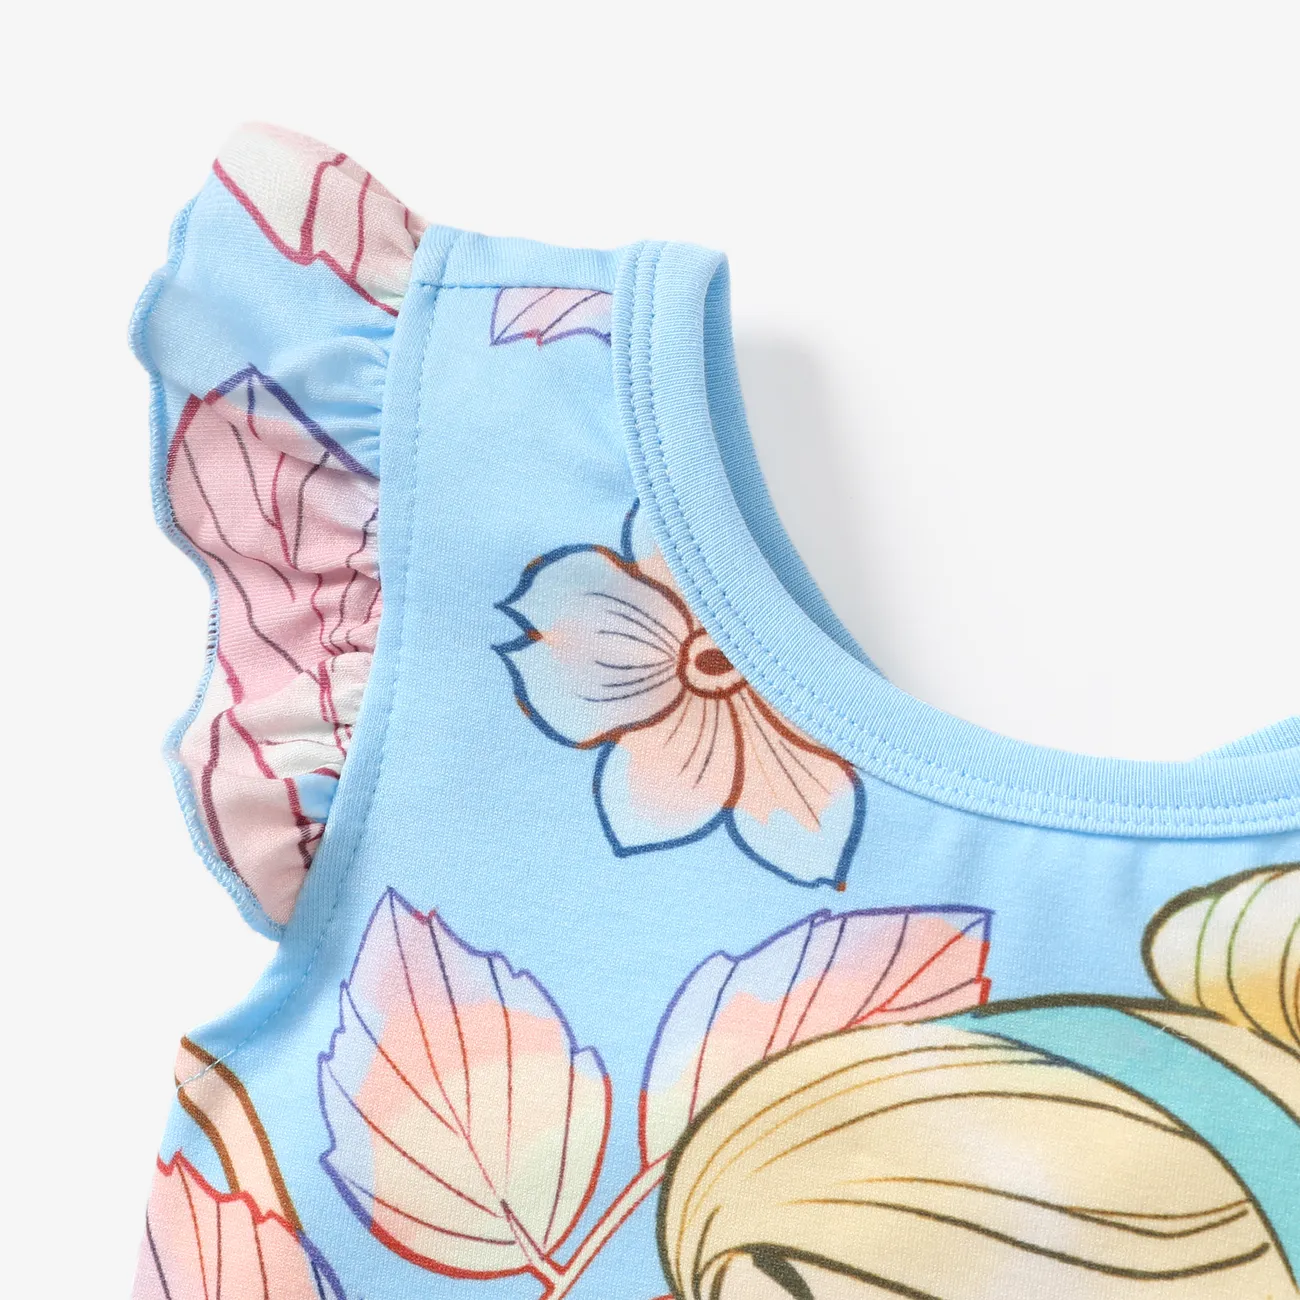  Disney Princess 2pcs Toddler Girls Naia™ Character Floral Print Ruffled Top with Shorts Set Blue big image 1